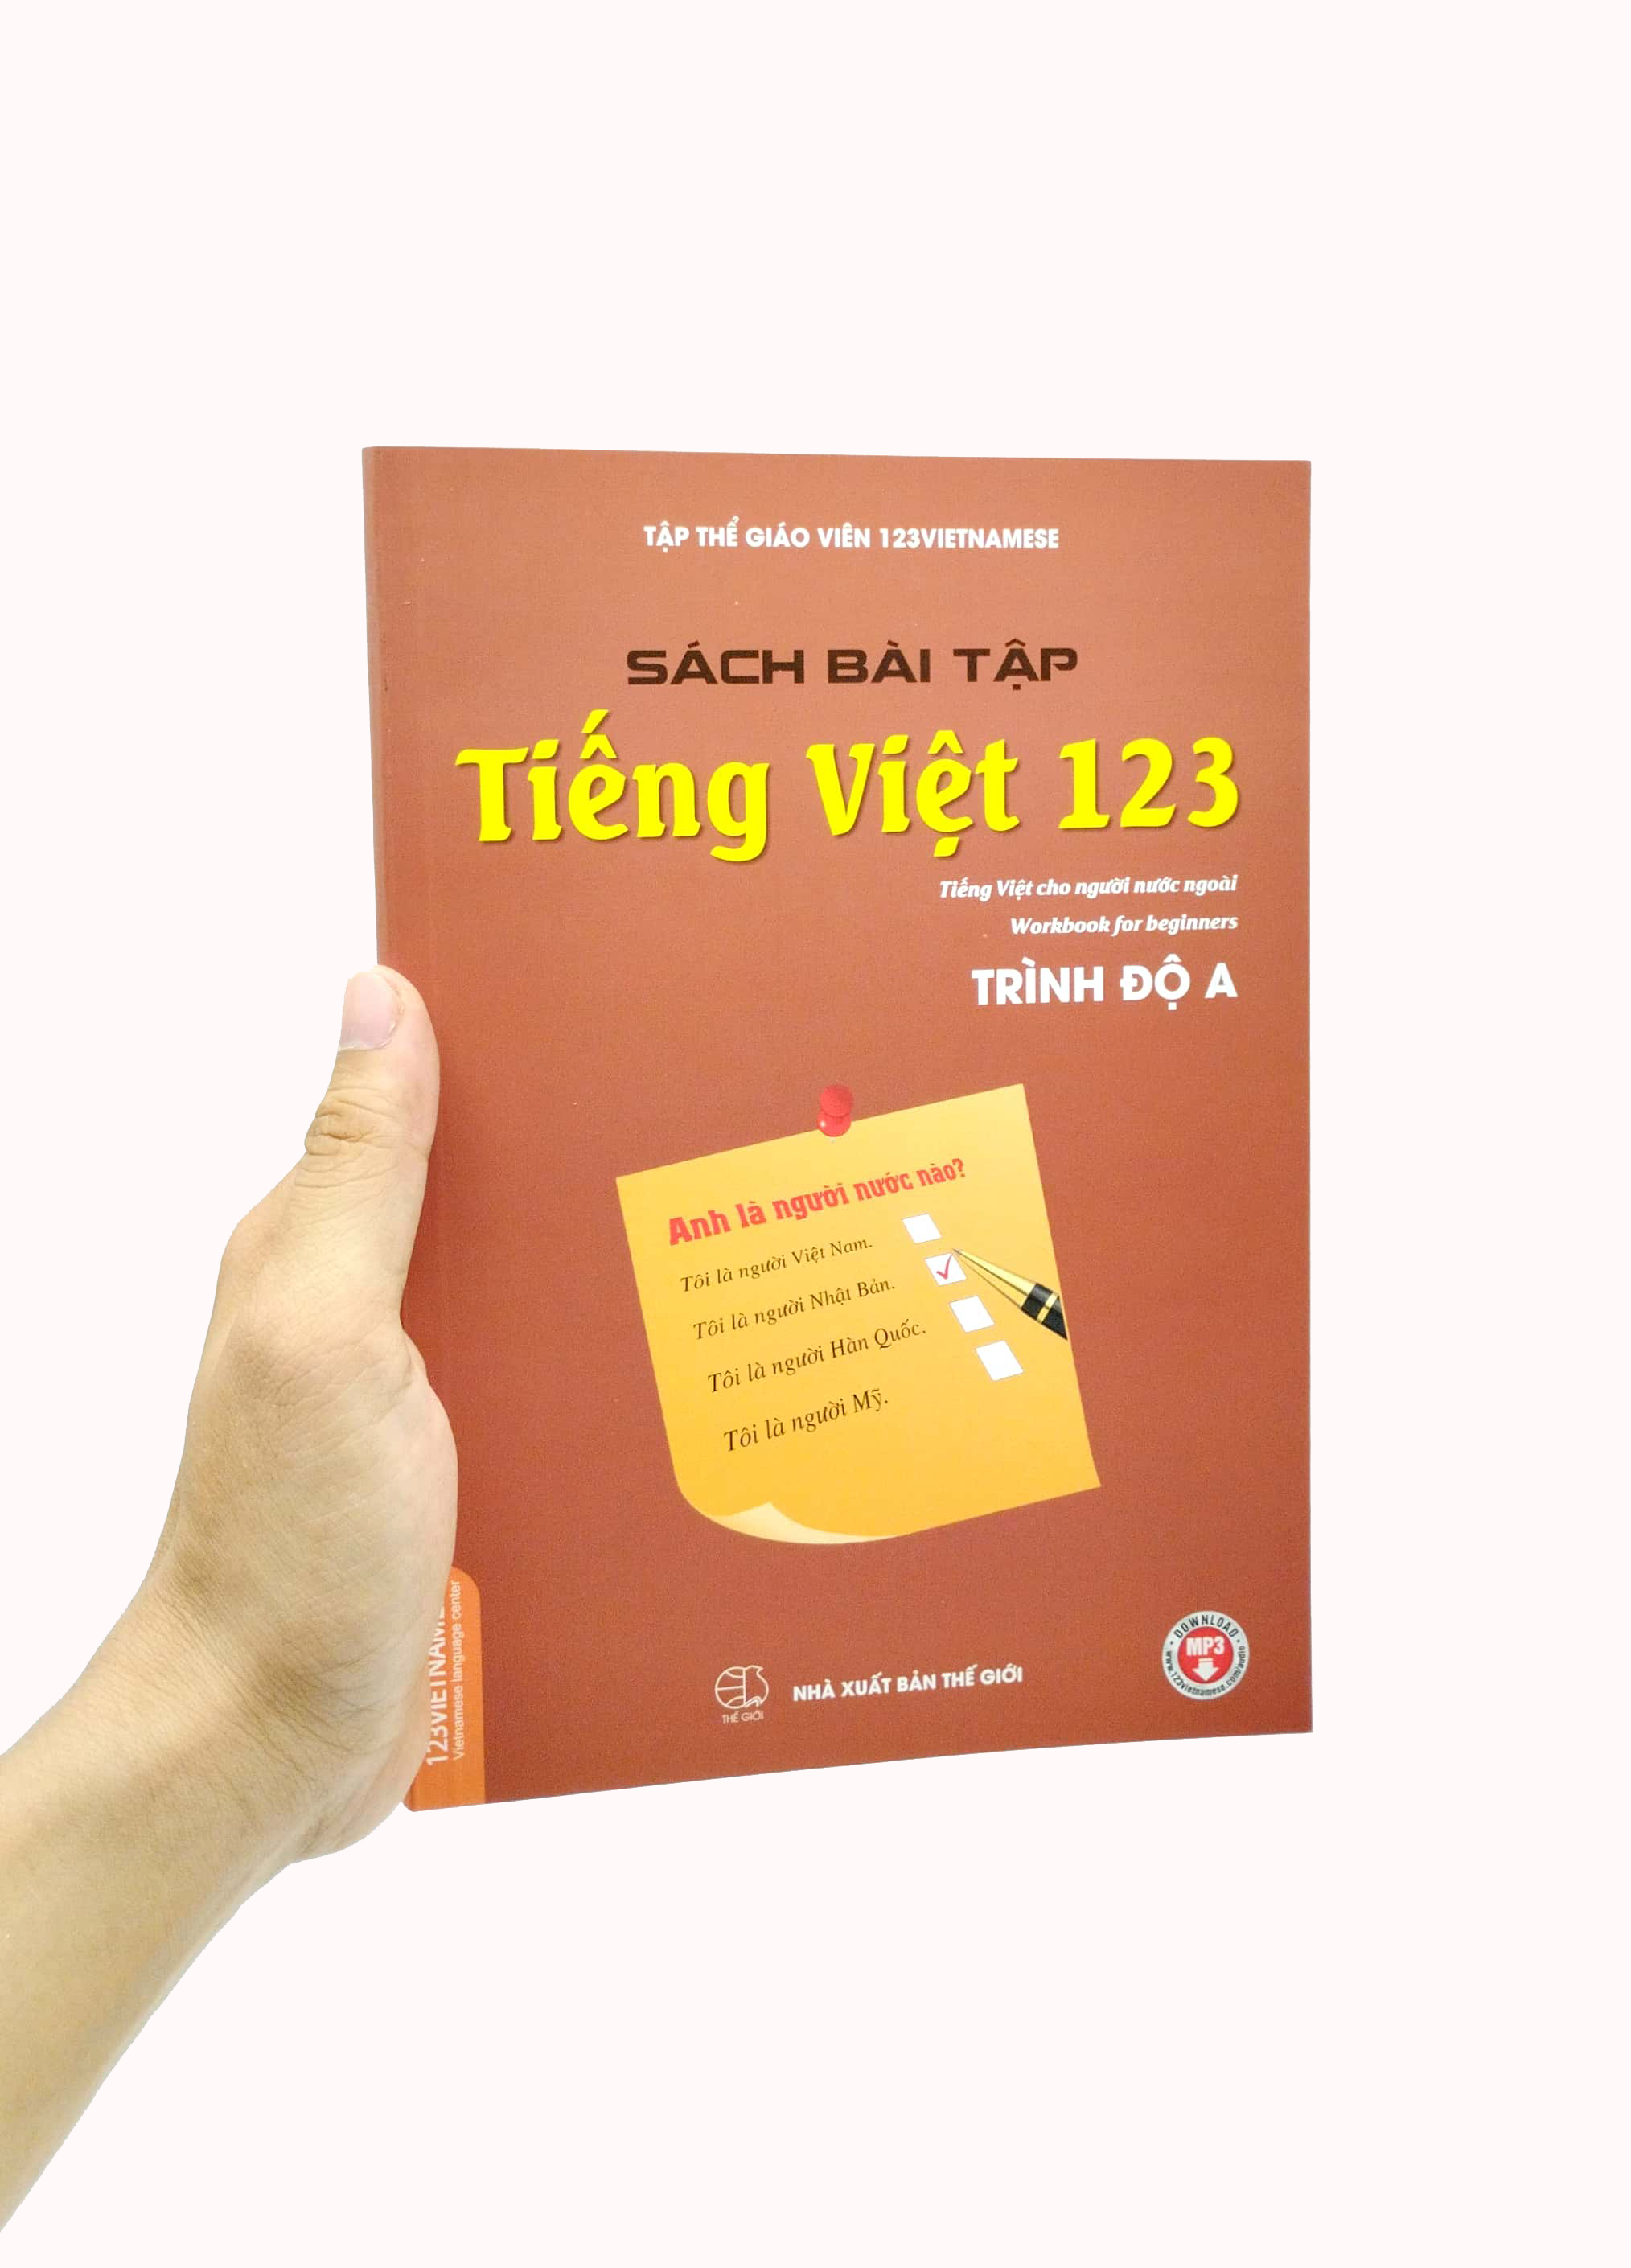 Bài Tập Tiếng Việt 123 - Tiếng Việt Dành Cho Người Nước Ngoài - Trình Độ A PDF